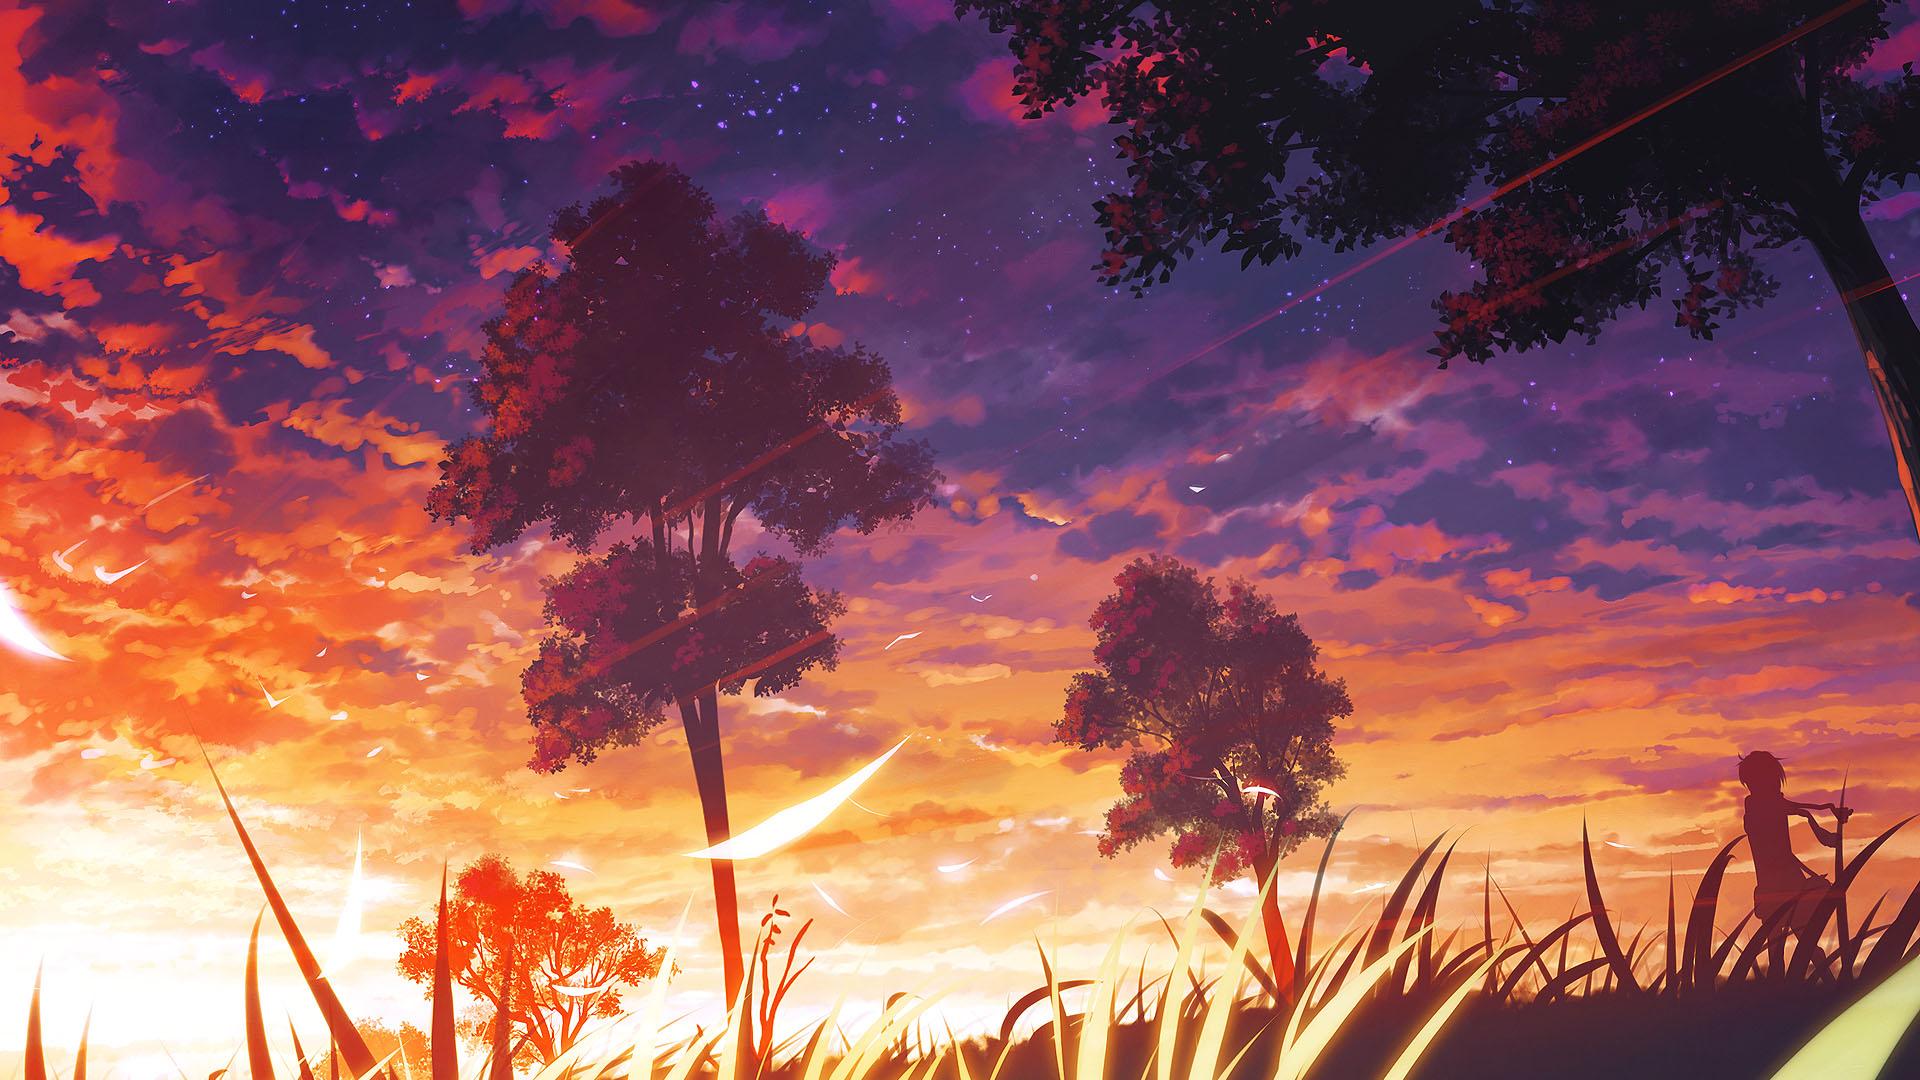 Anime Girl And Sunset HD Wallpaperx1080